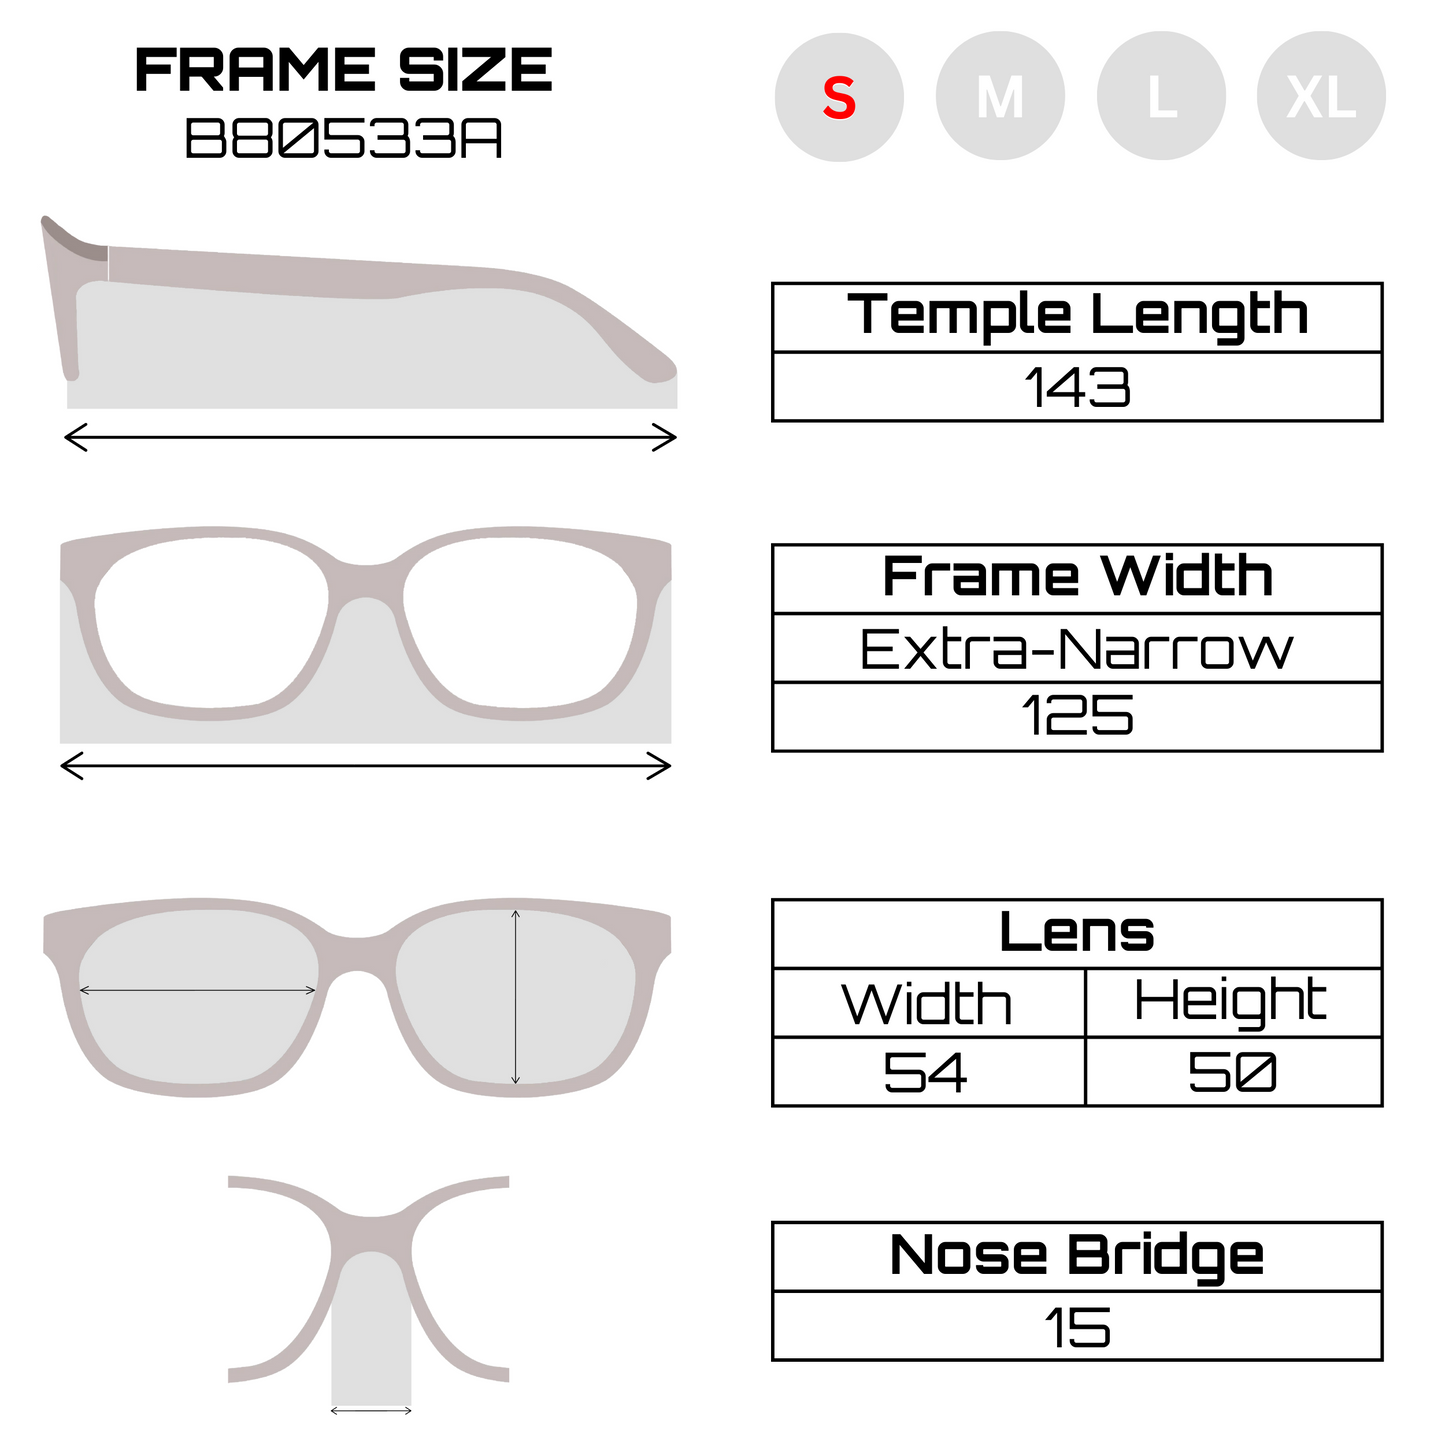 Xiraro Wayfarer Sunglasses for Men & Women (B80533A)